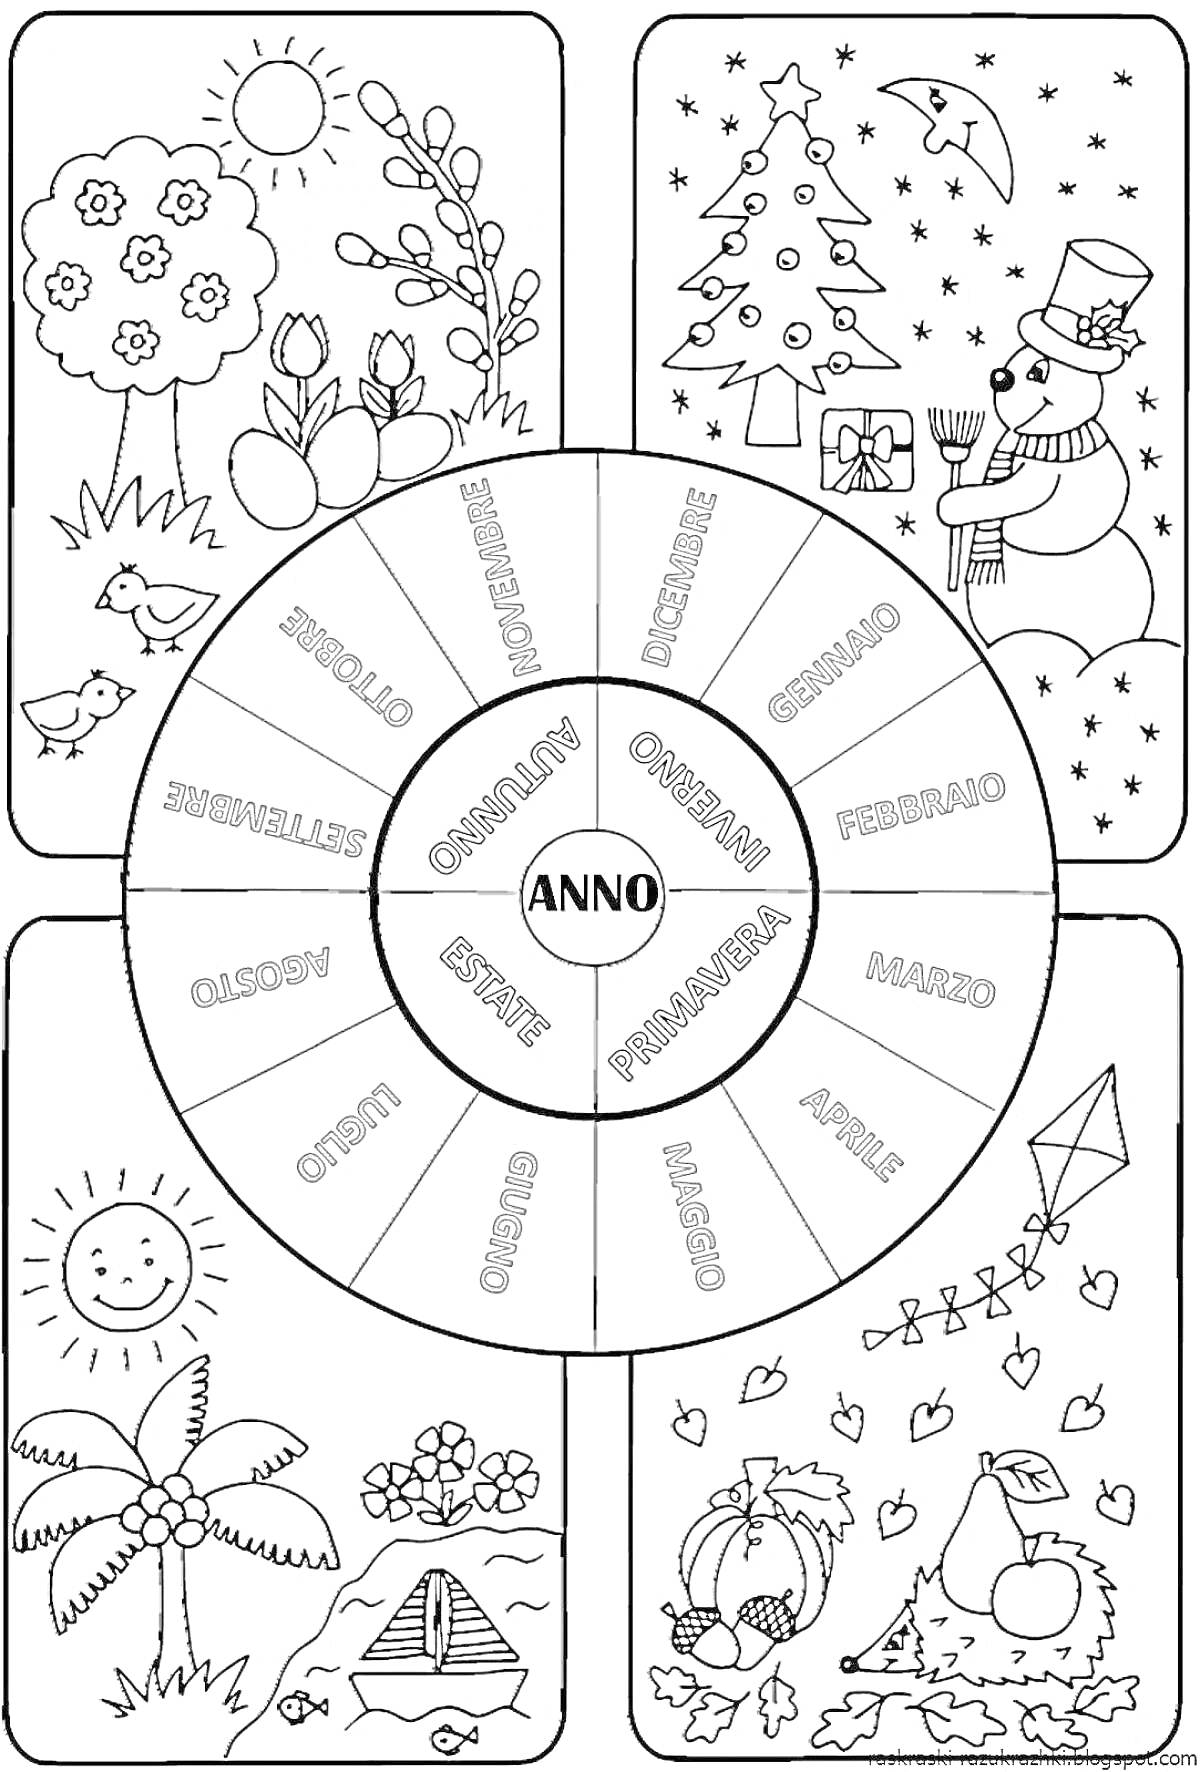 Раскраска Раскраска - недельный круг для 1 класса с изображением весны с деревьями и цветами, зимы со снеговиком и ёлкой, лета с солнышком, пальмами и палаткой, осени с фруктами, листьями и воздушным змеем